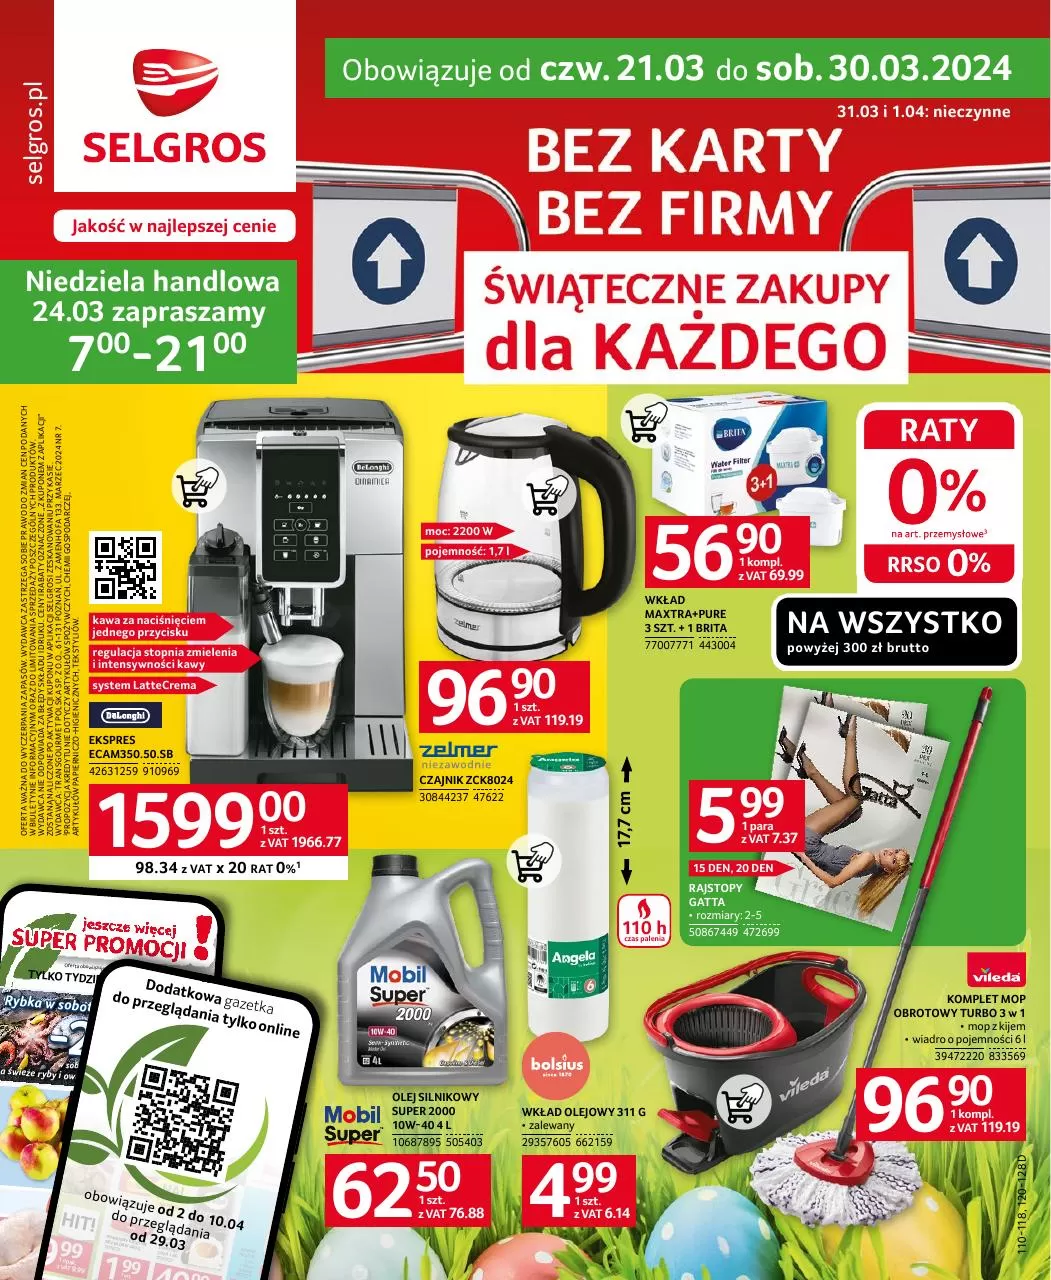 Ulotka gazetka promocyjna: Bez karty bez firmy ze sklepu Selgros dostępna od 21.03 do 30.03